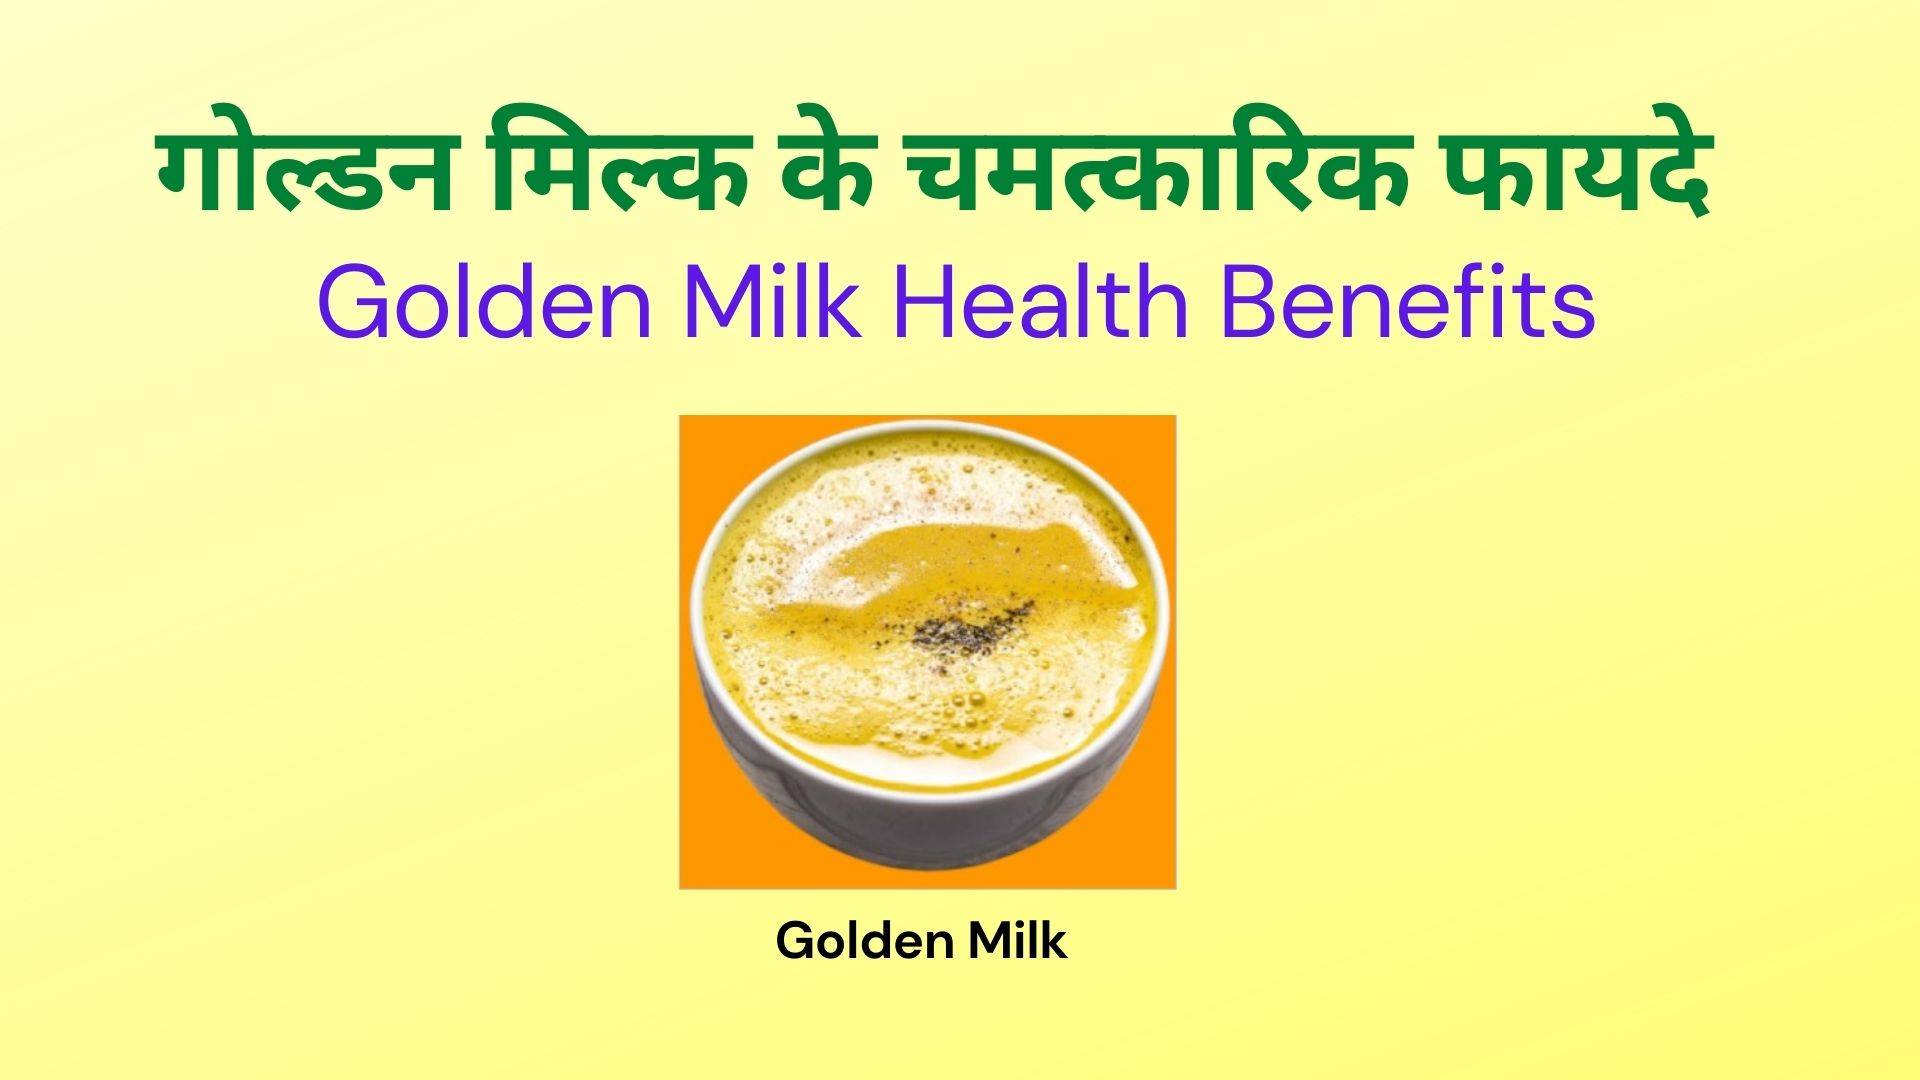 Golden Milk Health Benefits